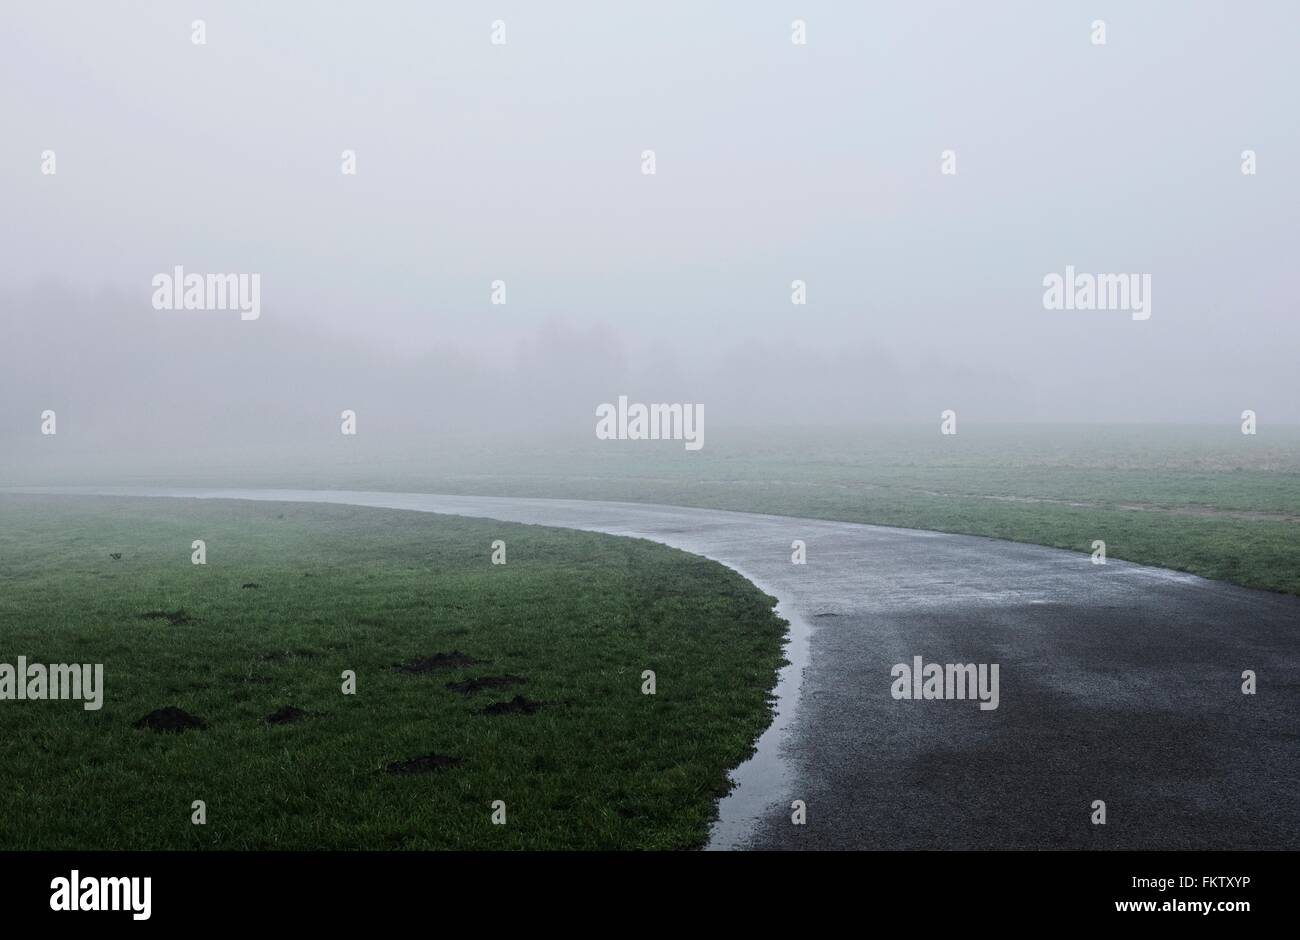 Misty countryside landscape Stock Photo